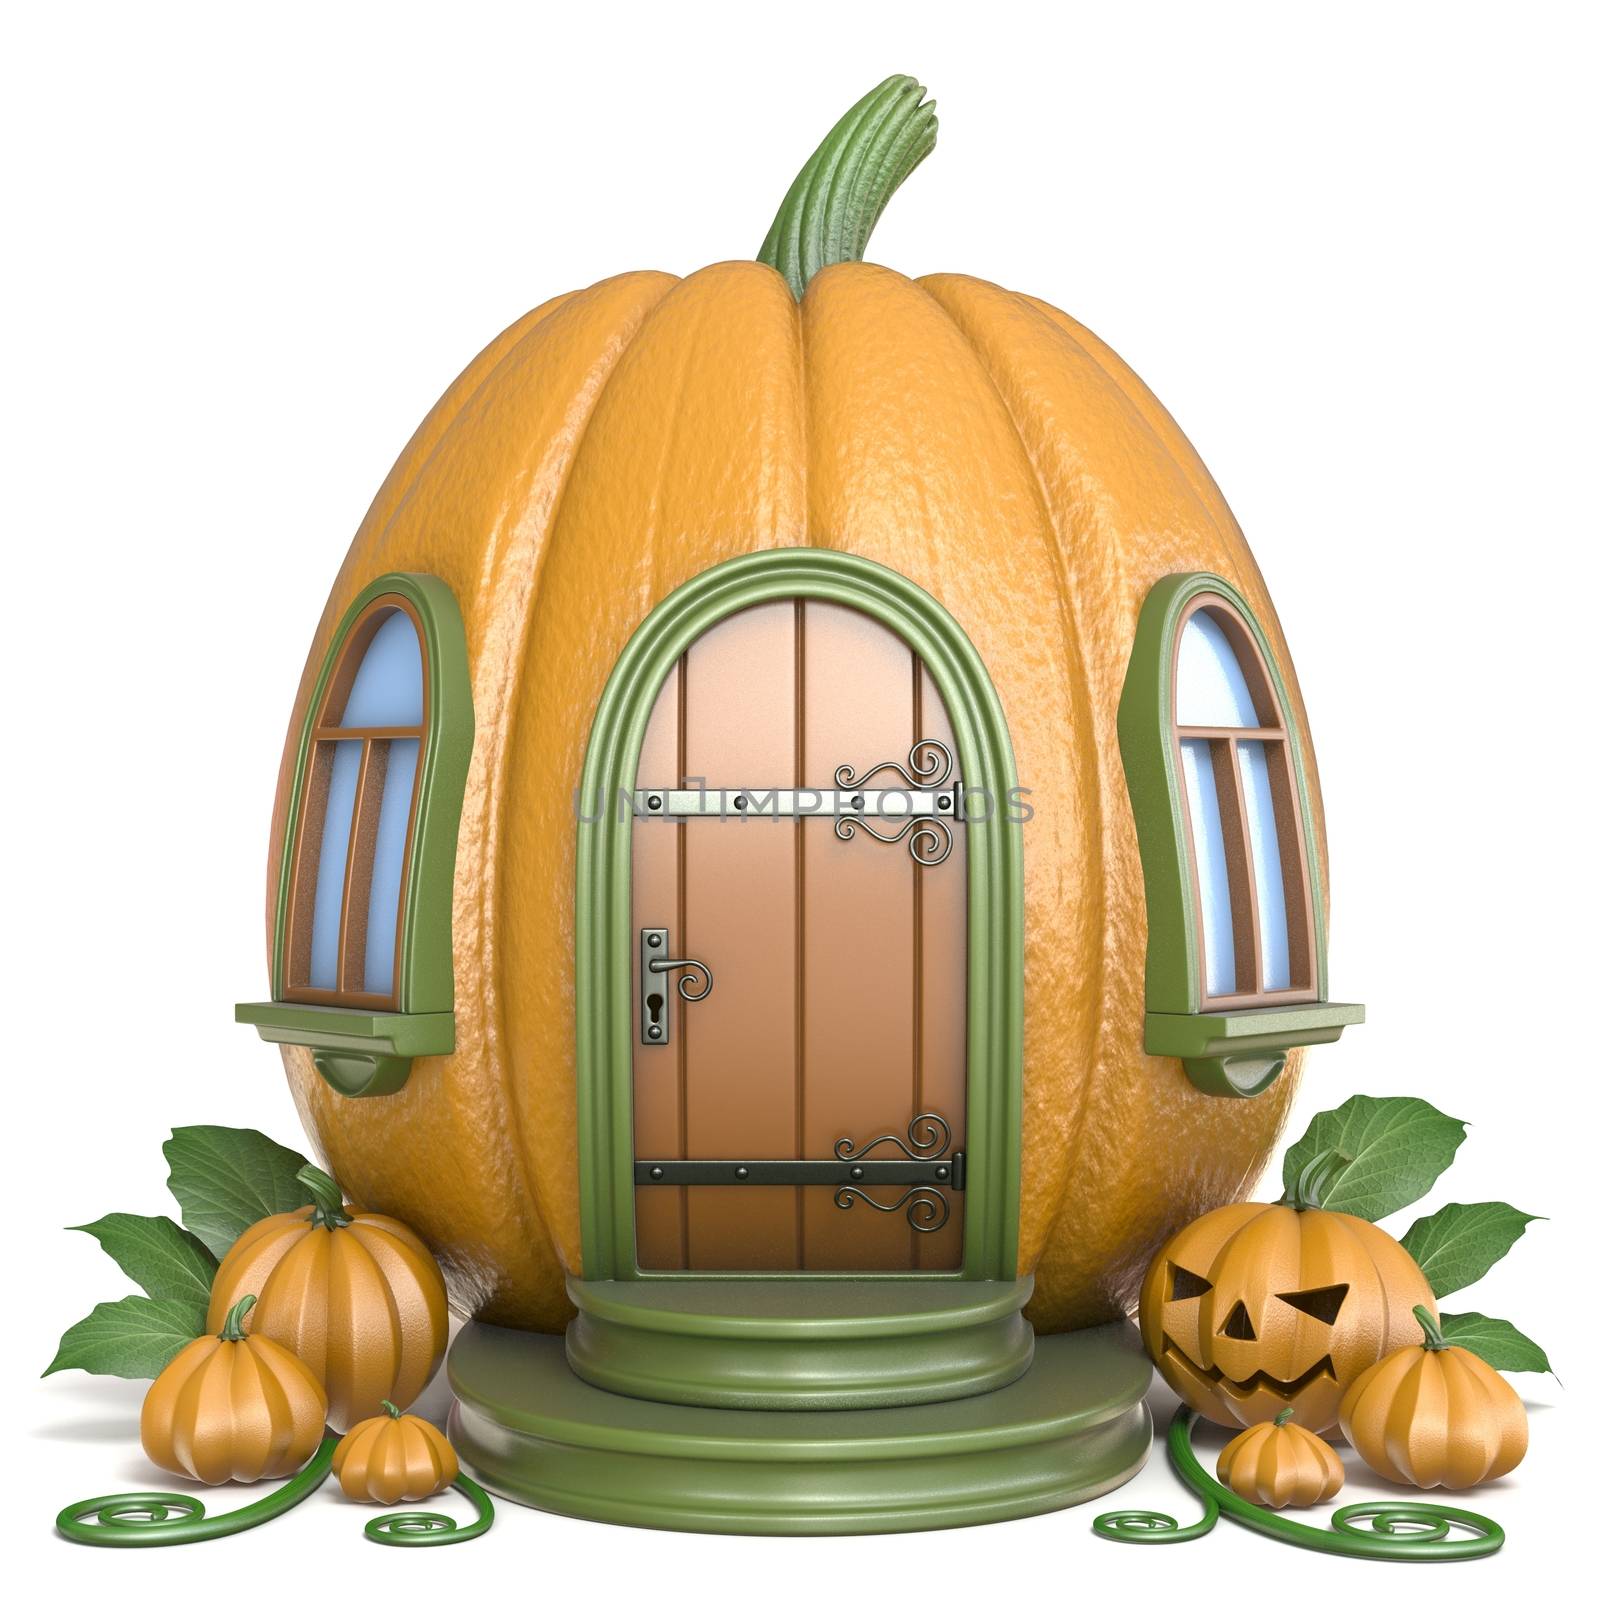 Halloween pumpkin house 3D by djmilic